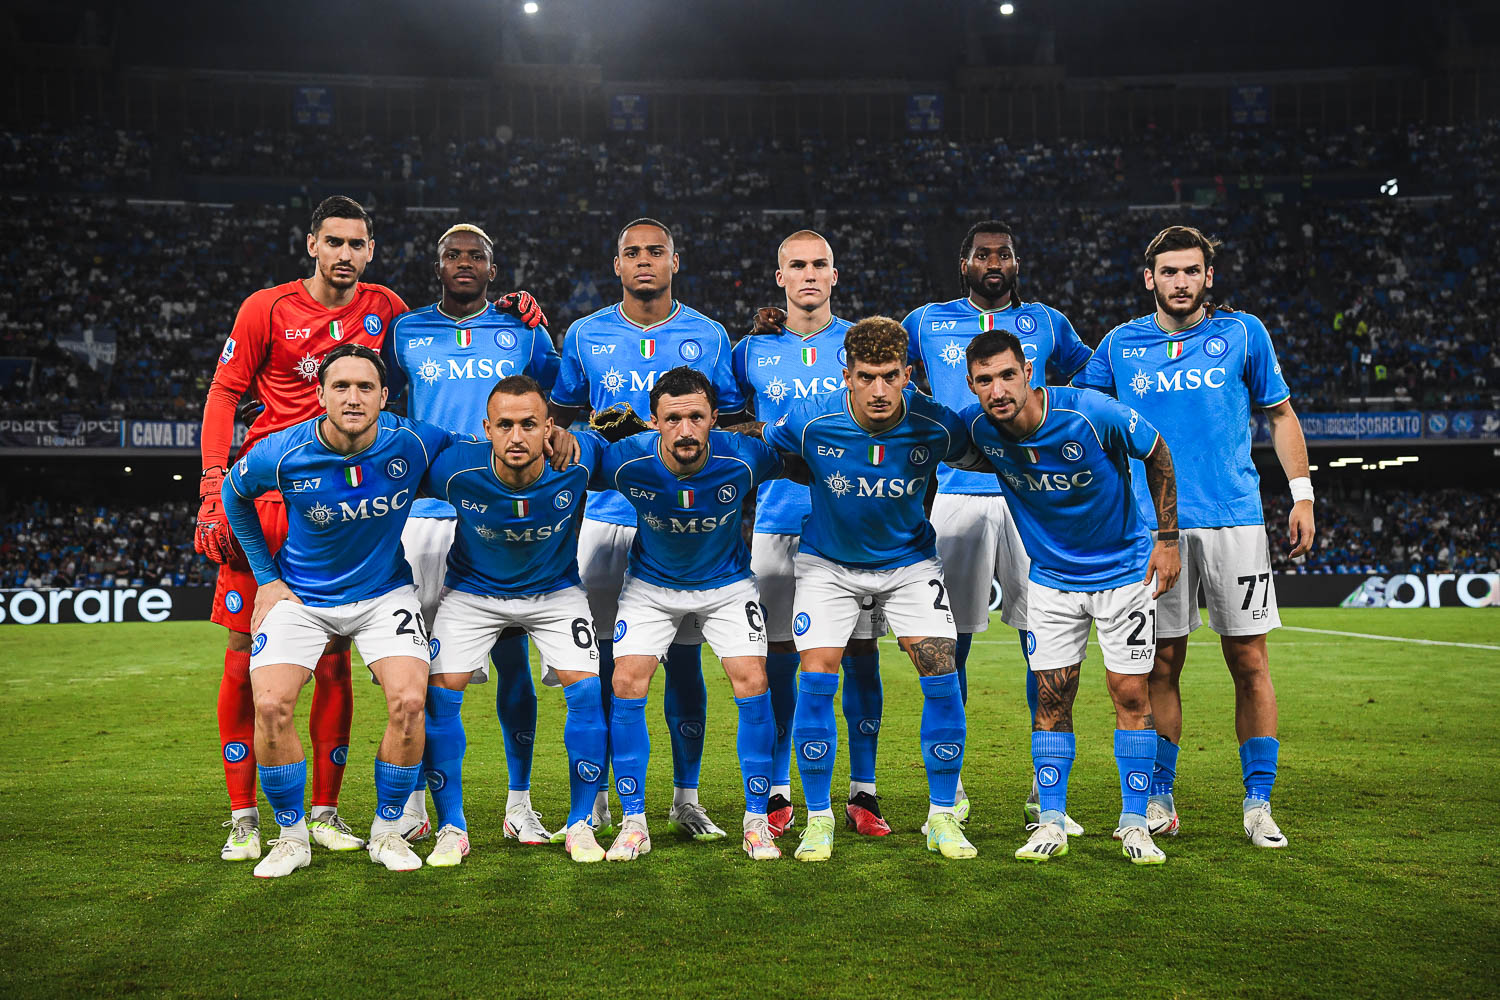 Calcio Napoli finalmente autoritario:4-1 all'Udinese